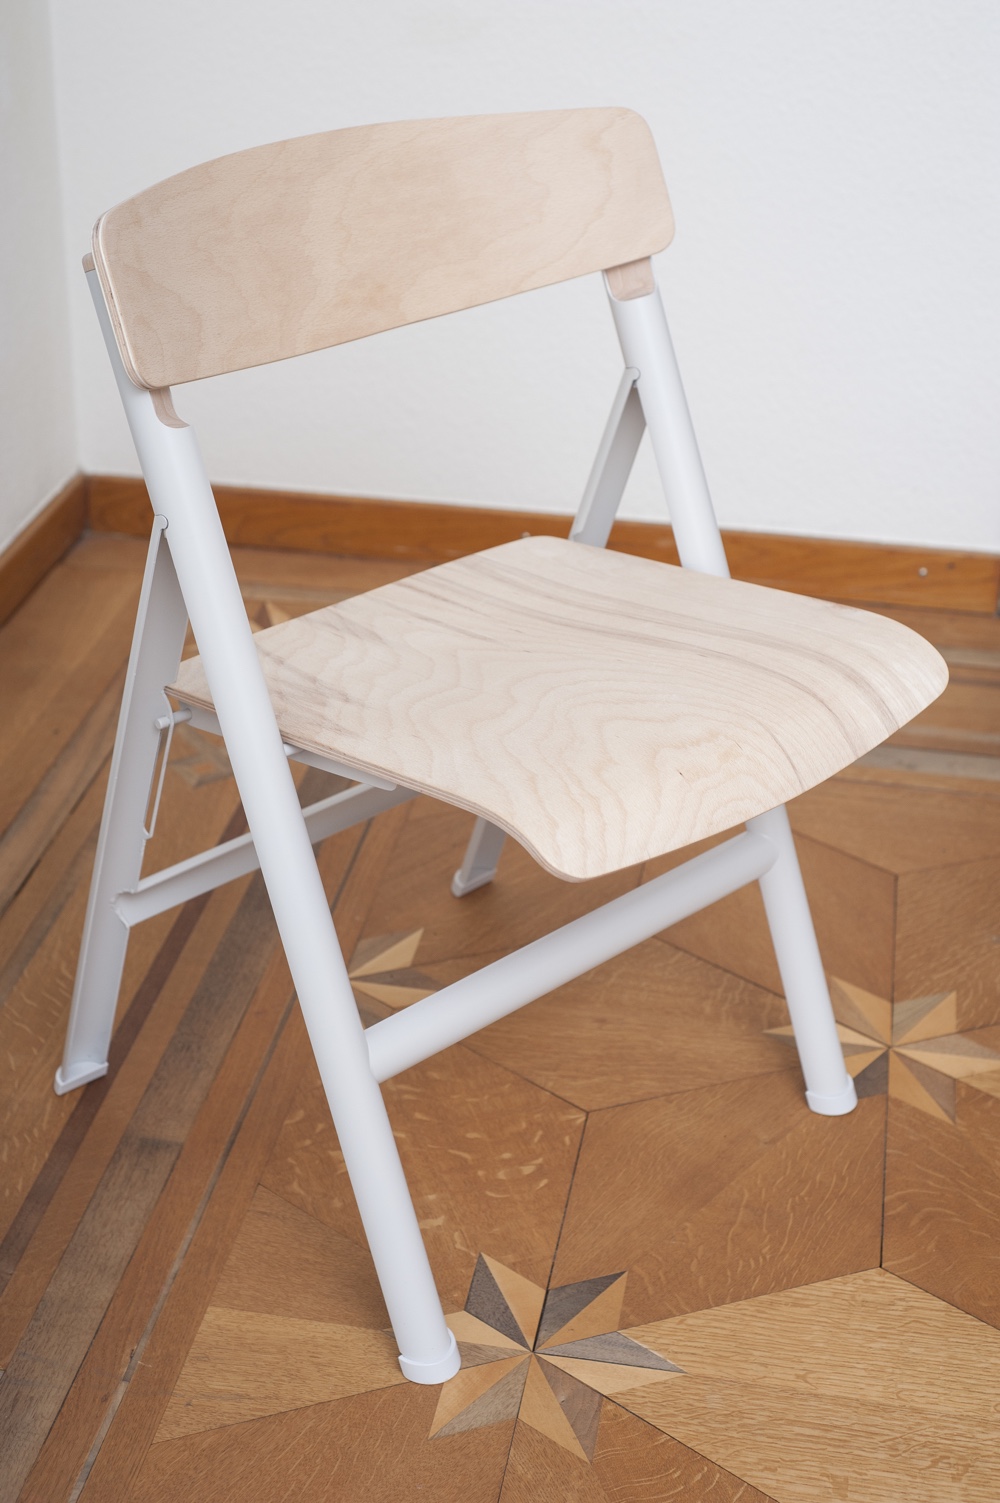 Klappstuhl-chair-1